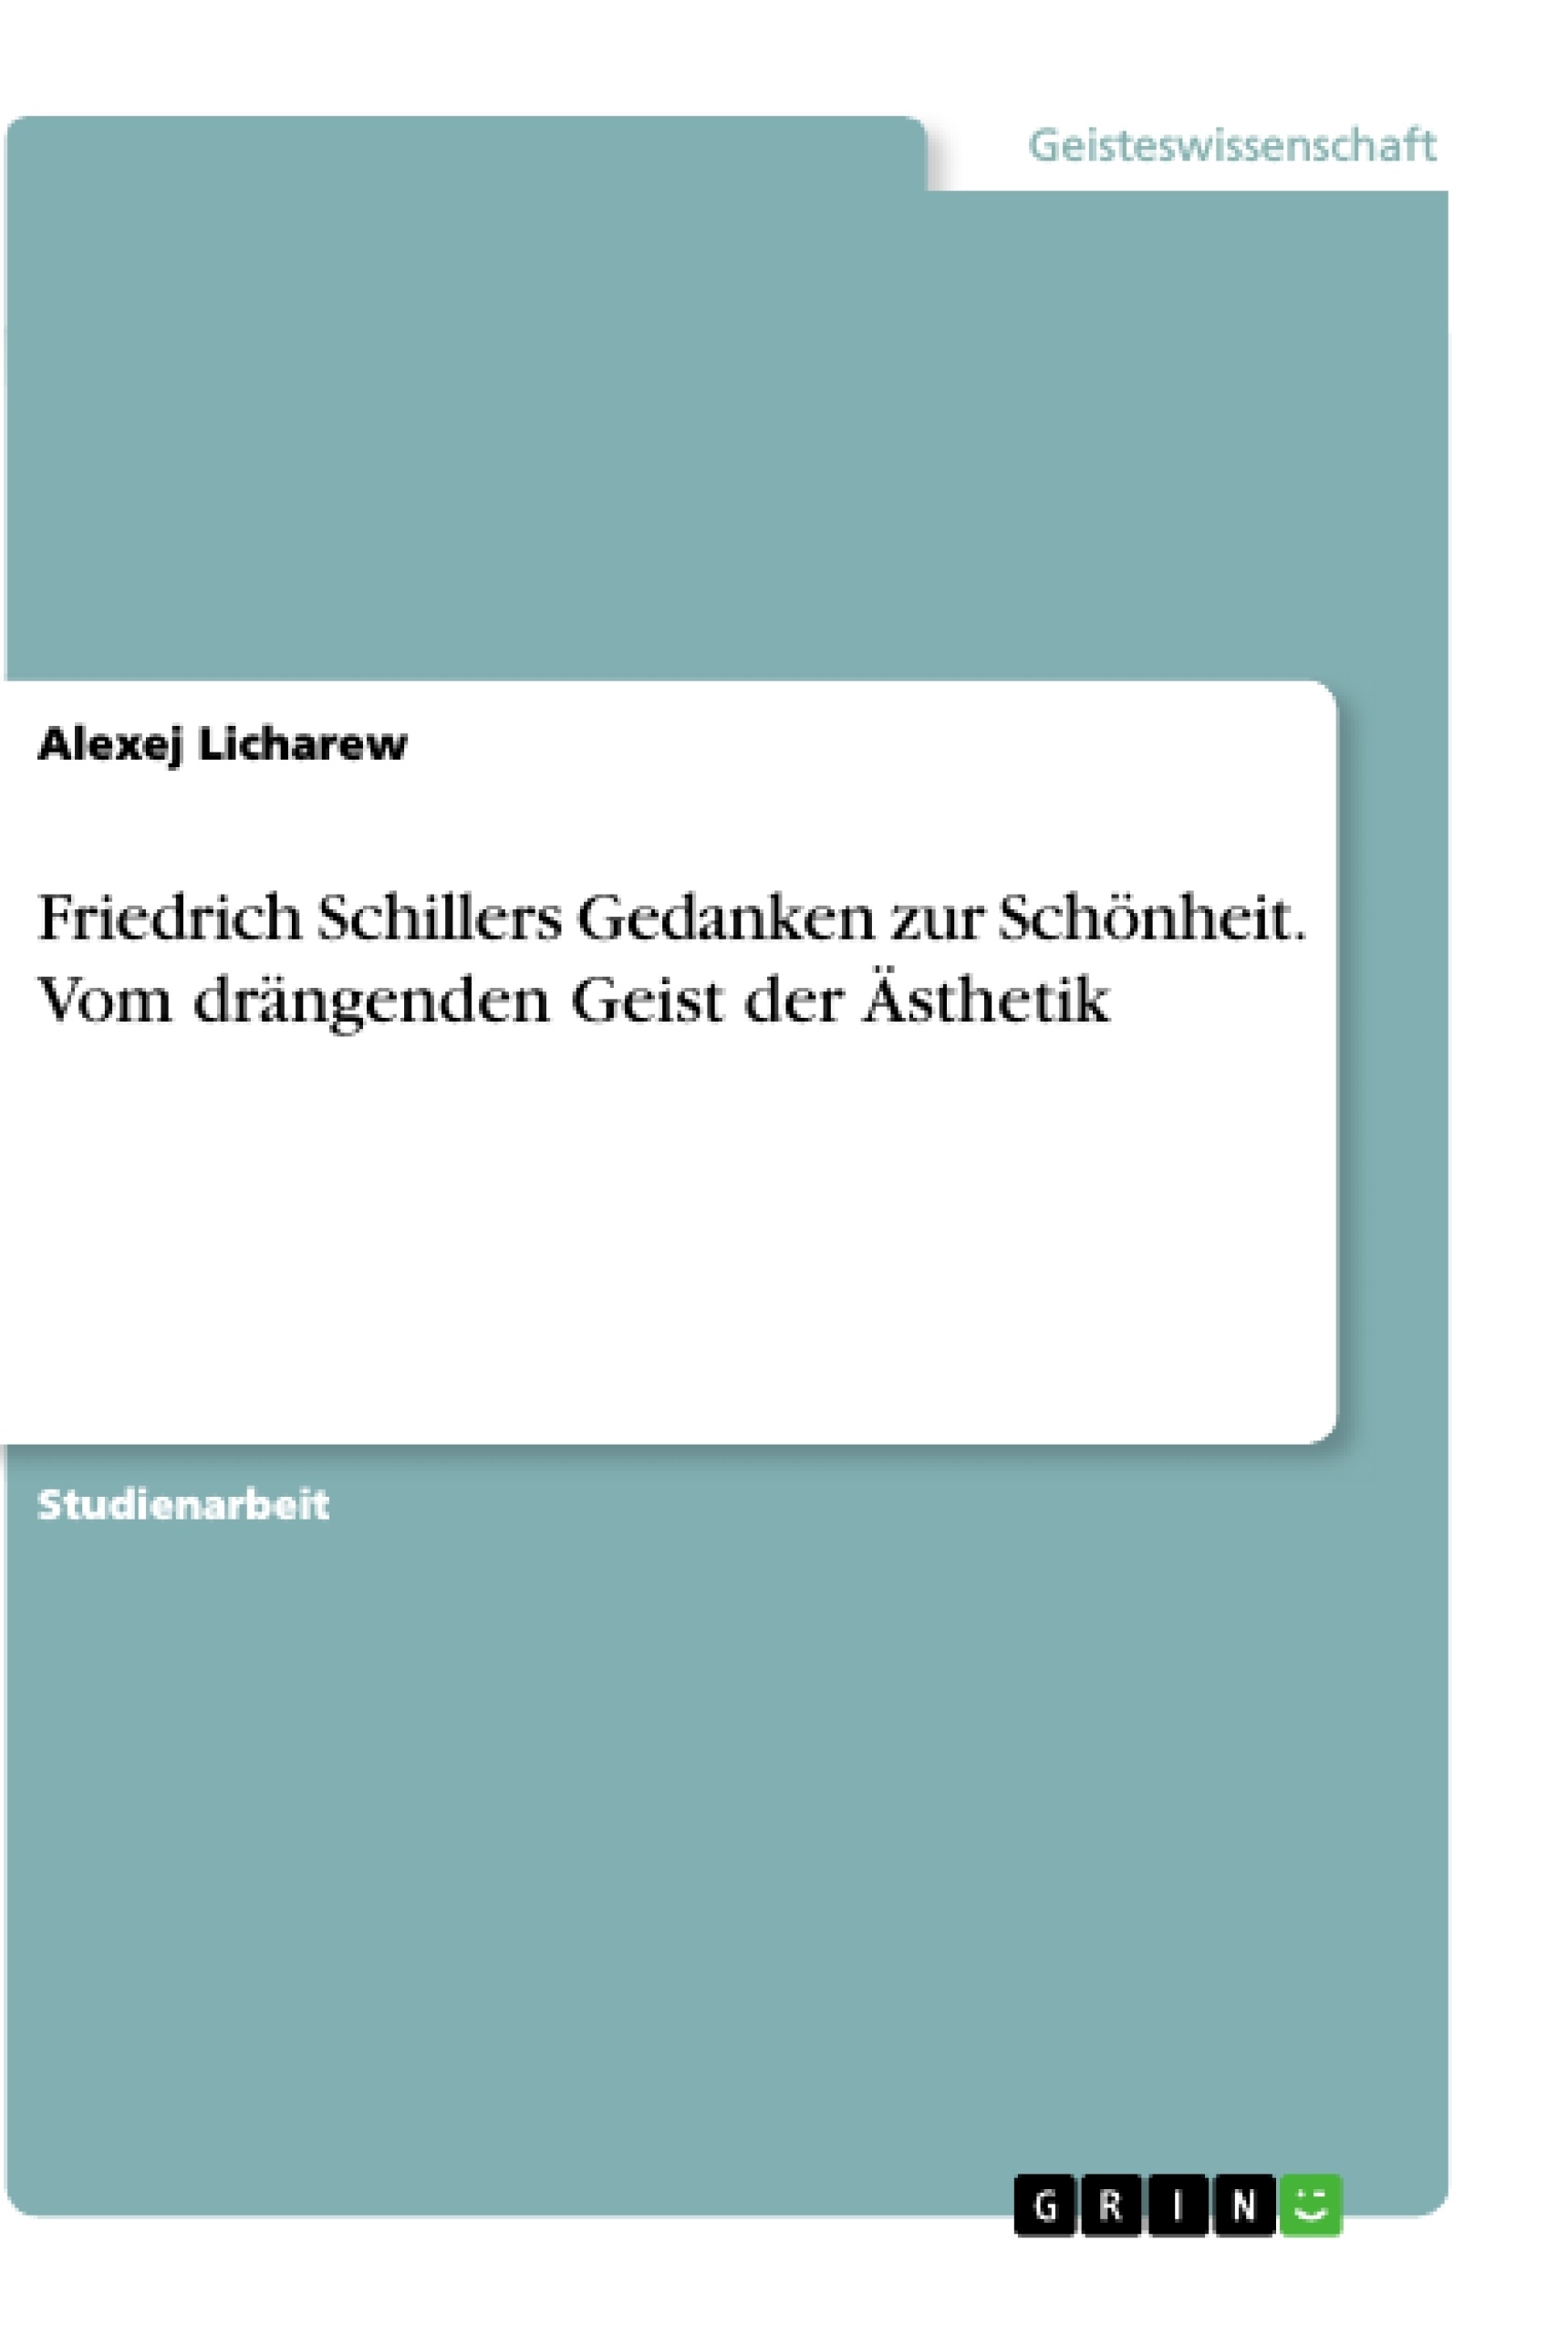 Titre: Friedrich Schillers Gedanken zur Schönheit. Vom drängenden Geist der Ästhetik